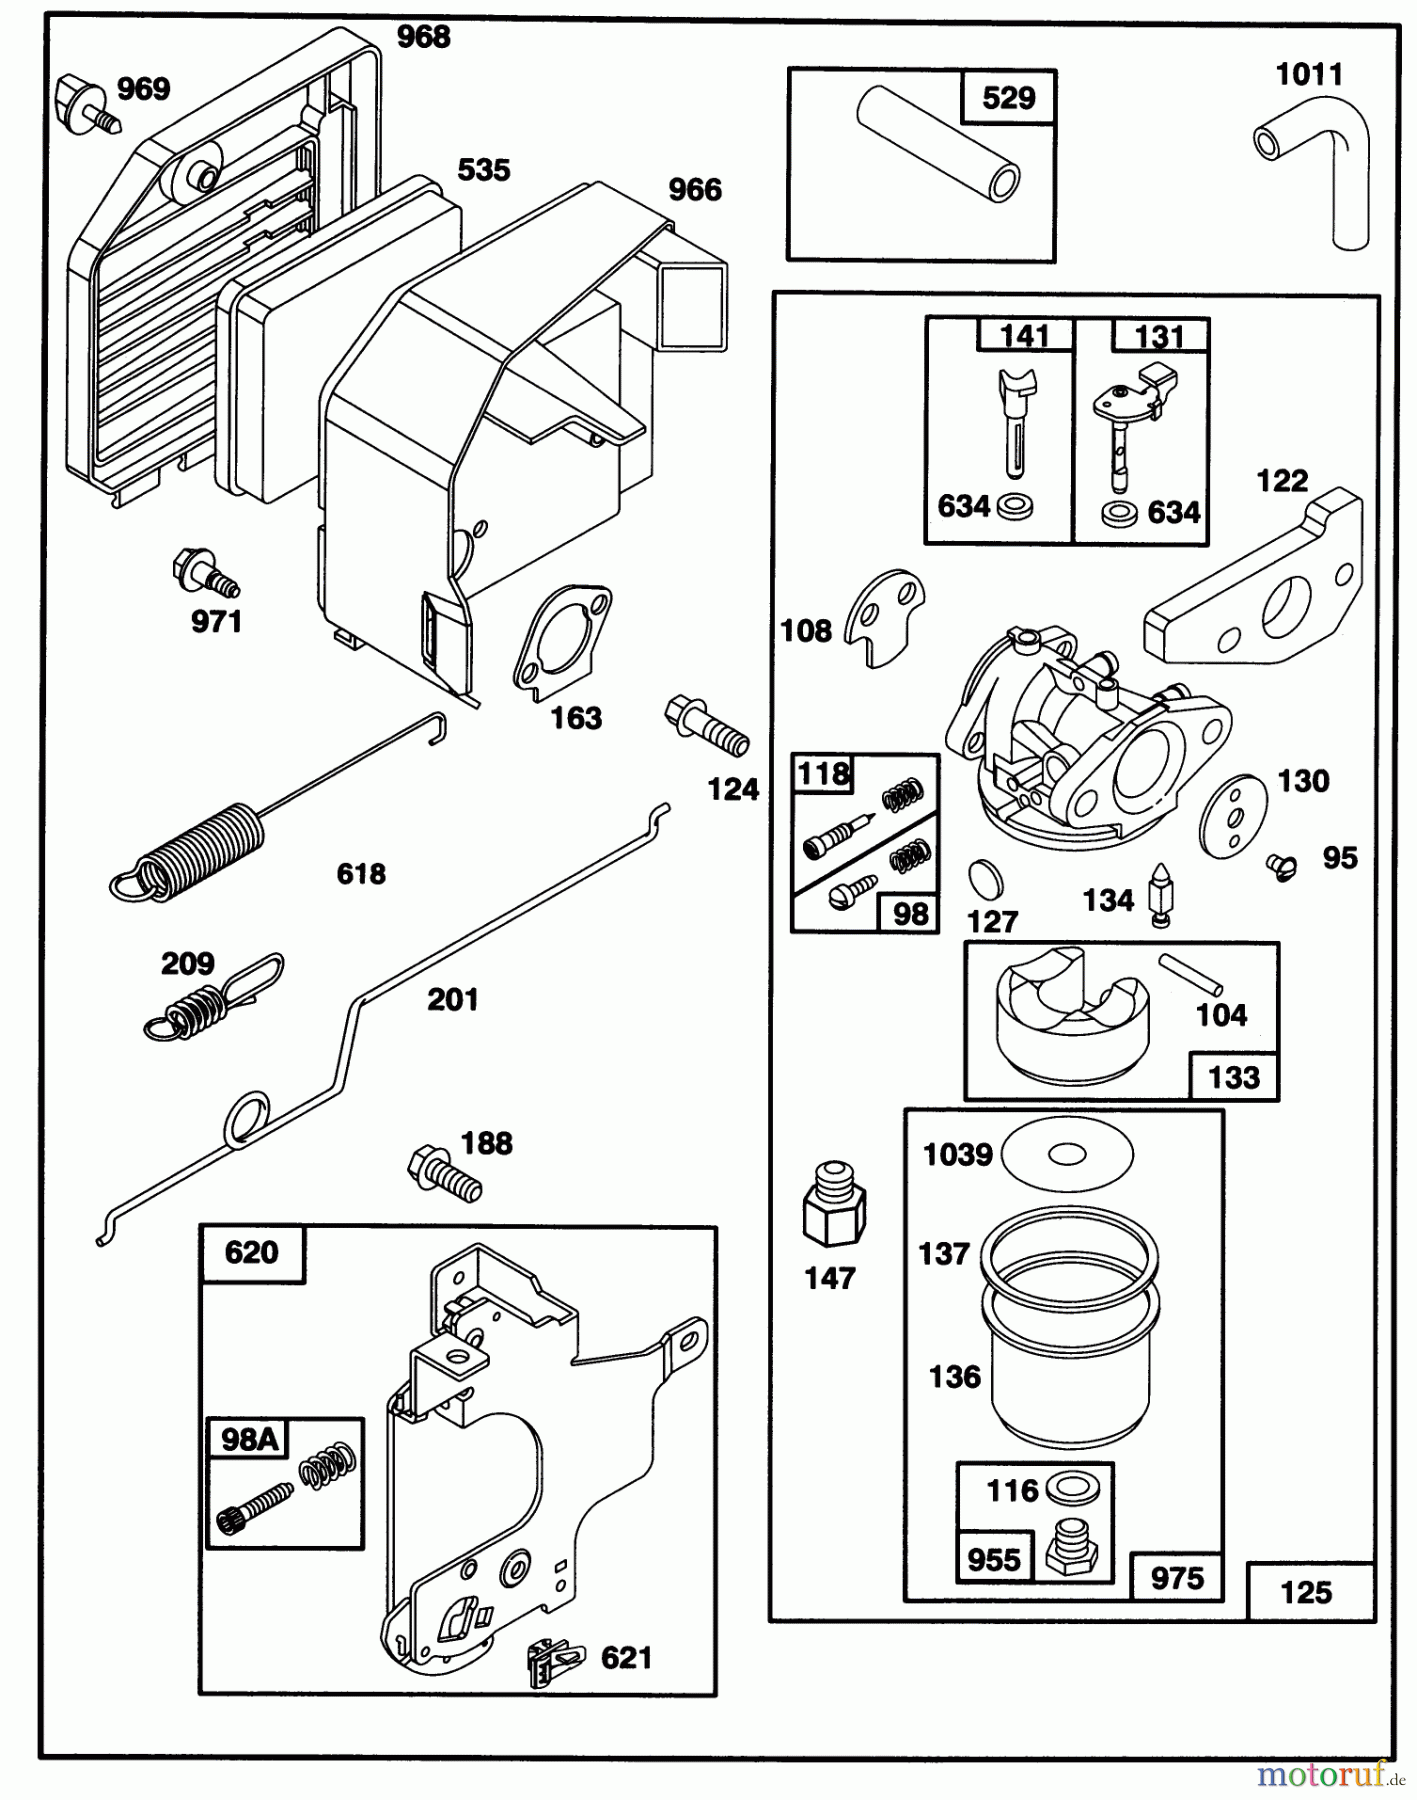  Toro Neu Mowers, Walk-Behind Seite 1 20763B - Toro Lawnmower, 1993 (39000001-39999999) ENGINE GTS-150 #2